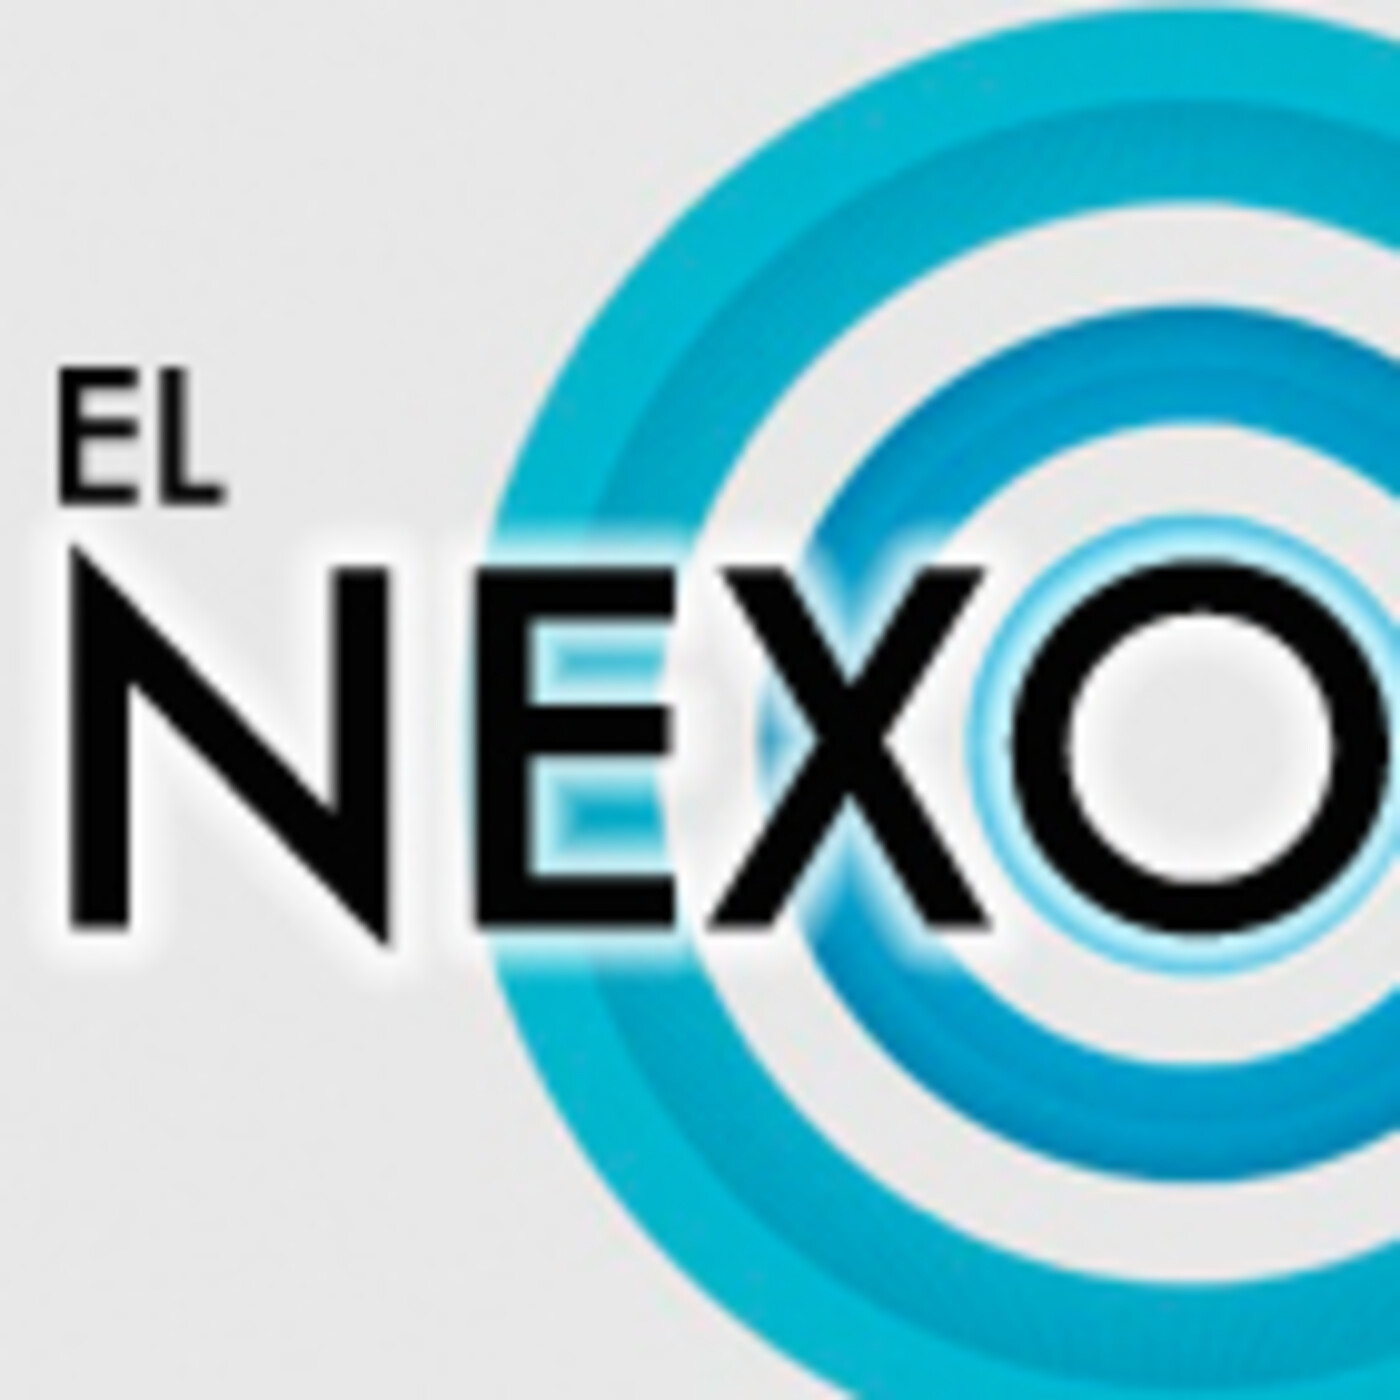 EL NEXO 4x00 - 12 MINUTES con y sin Spoilers